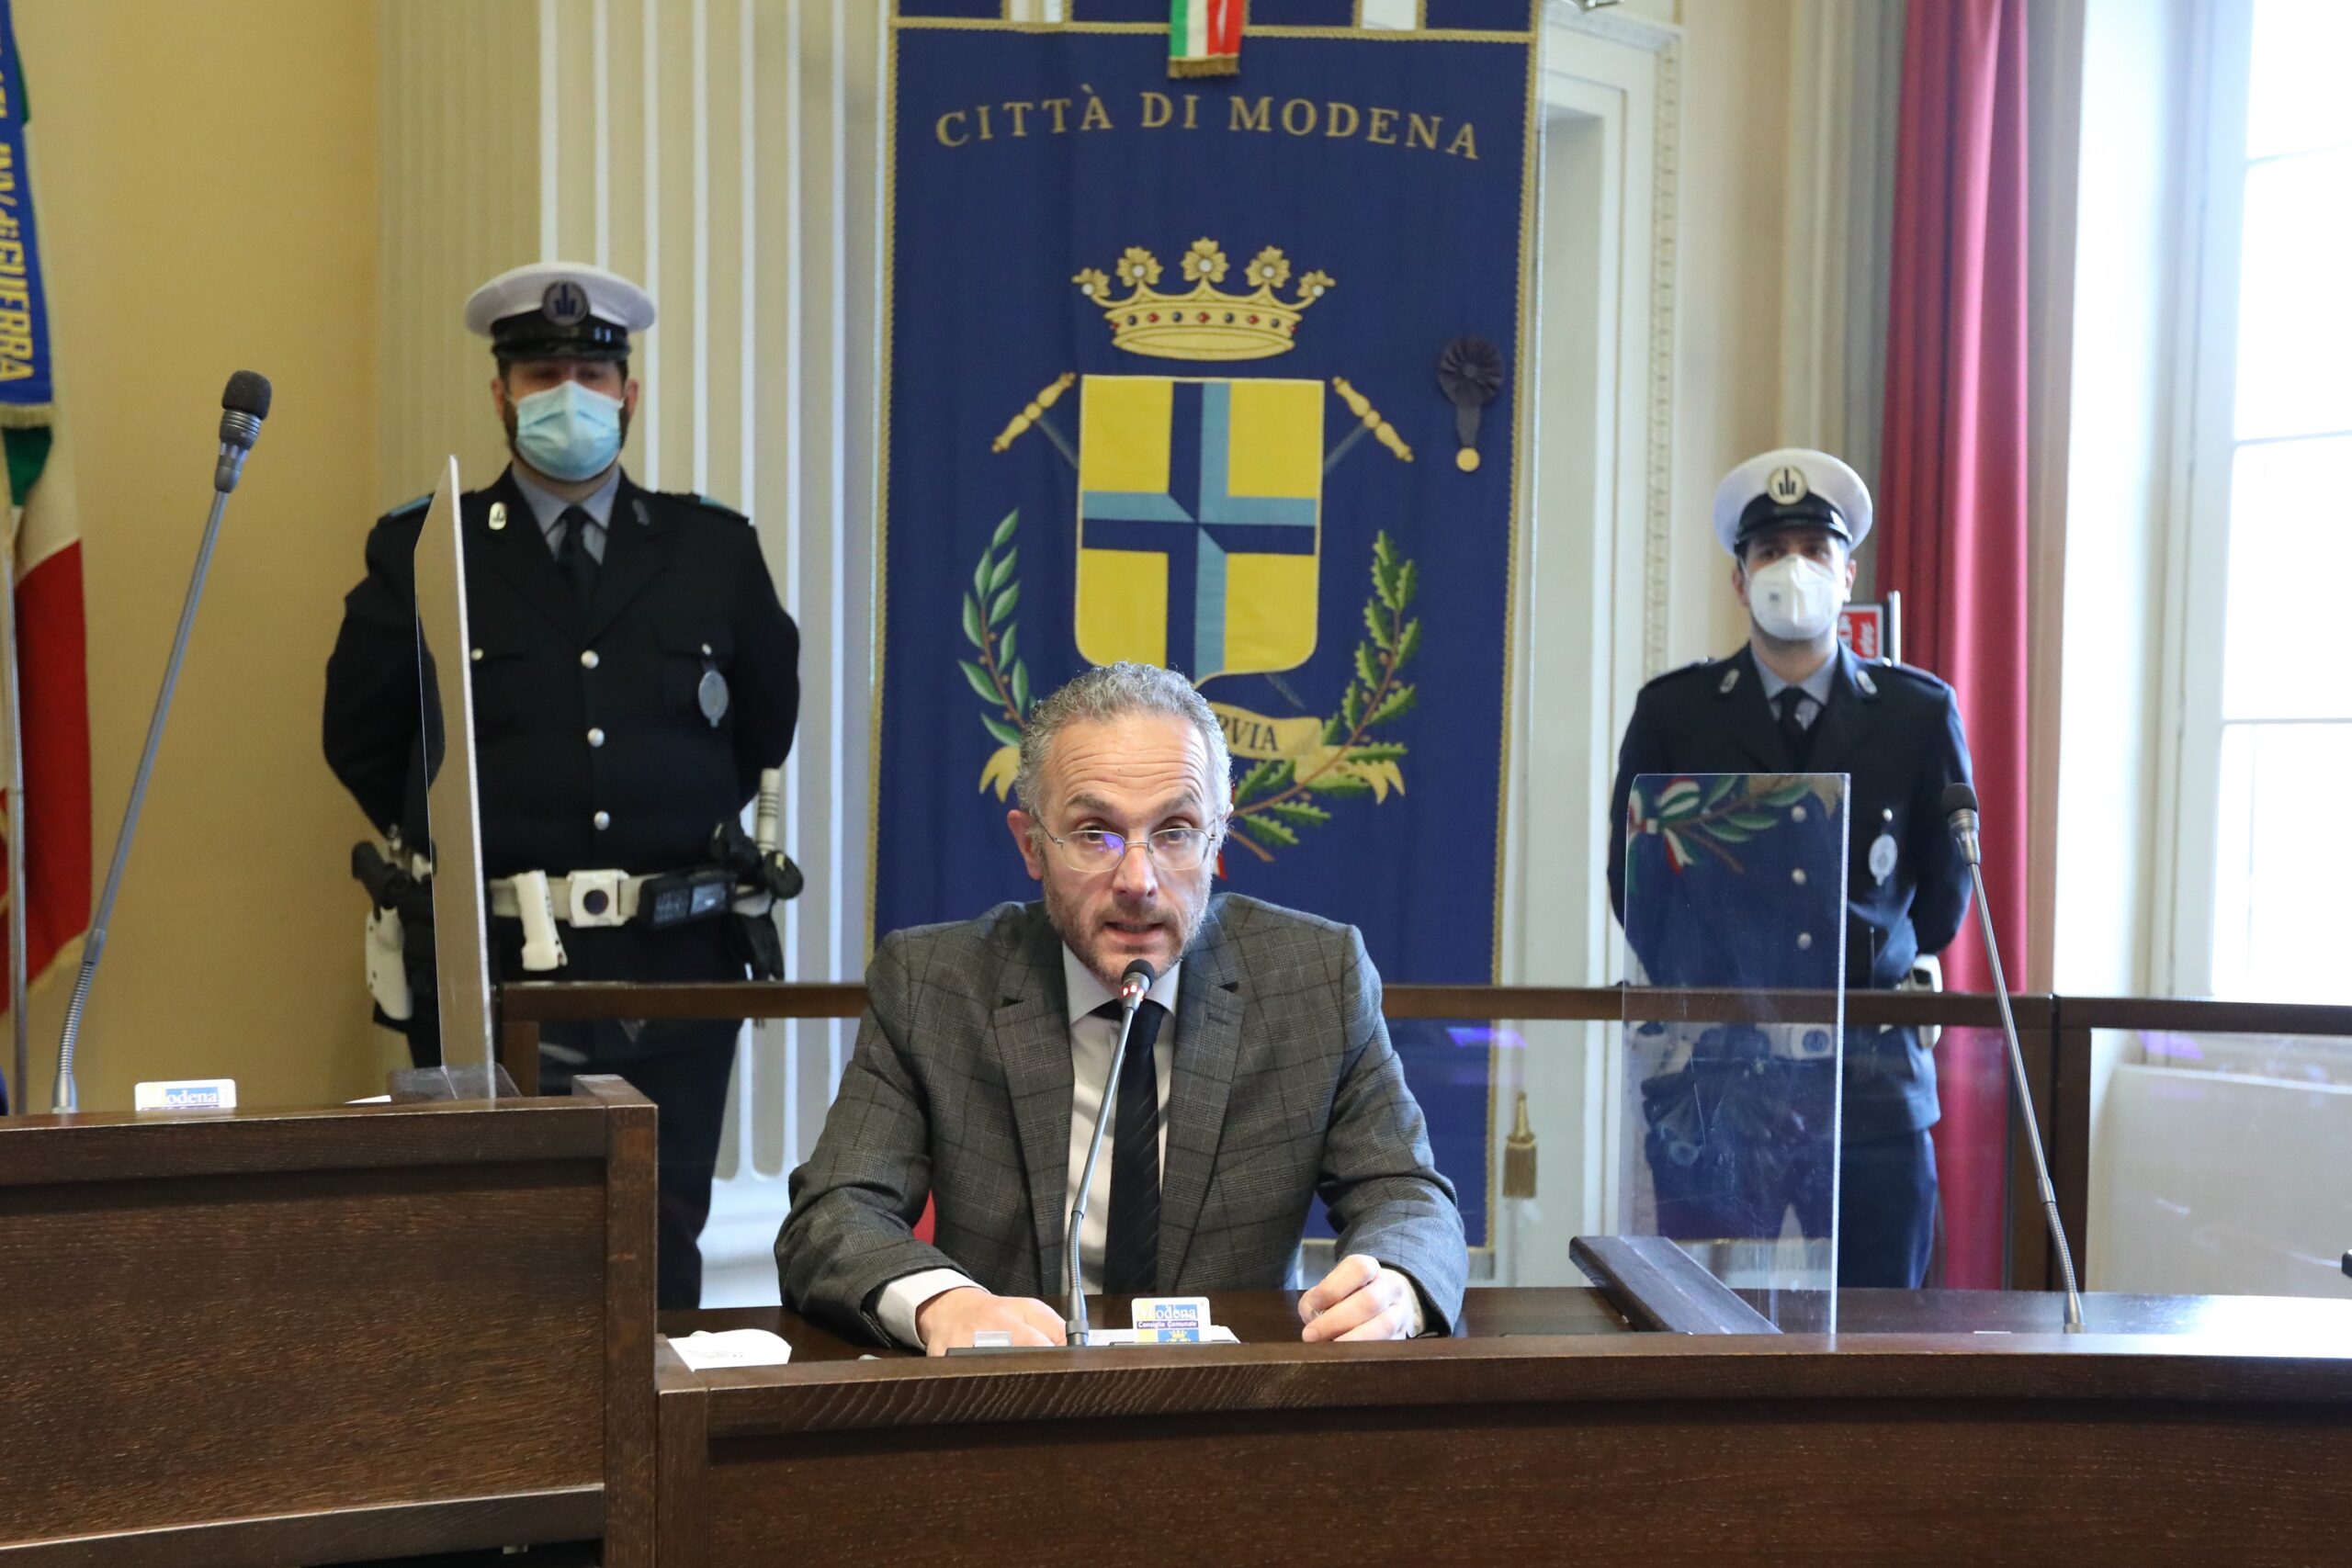  Modena ha revocato la cittadinanza a Mussolini (VIDEO)